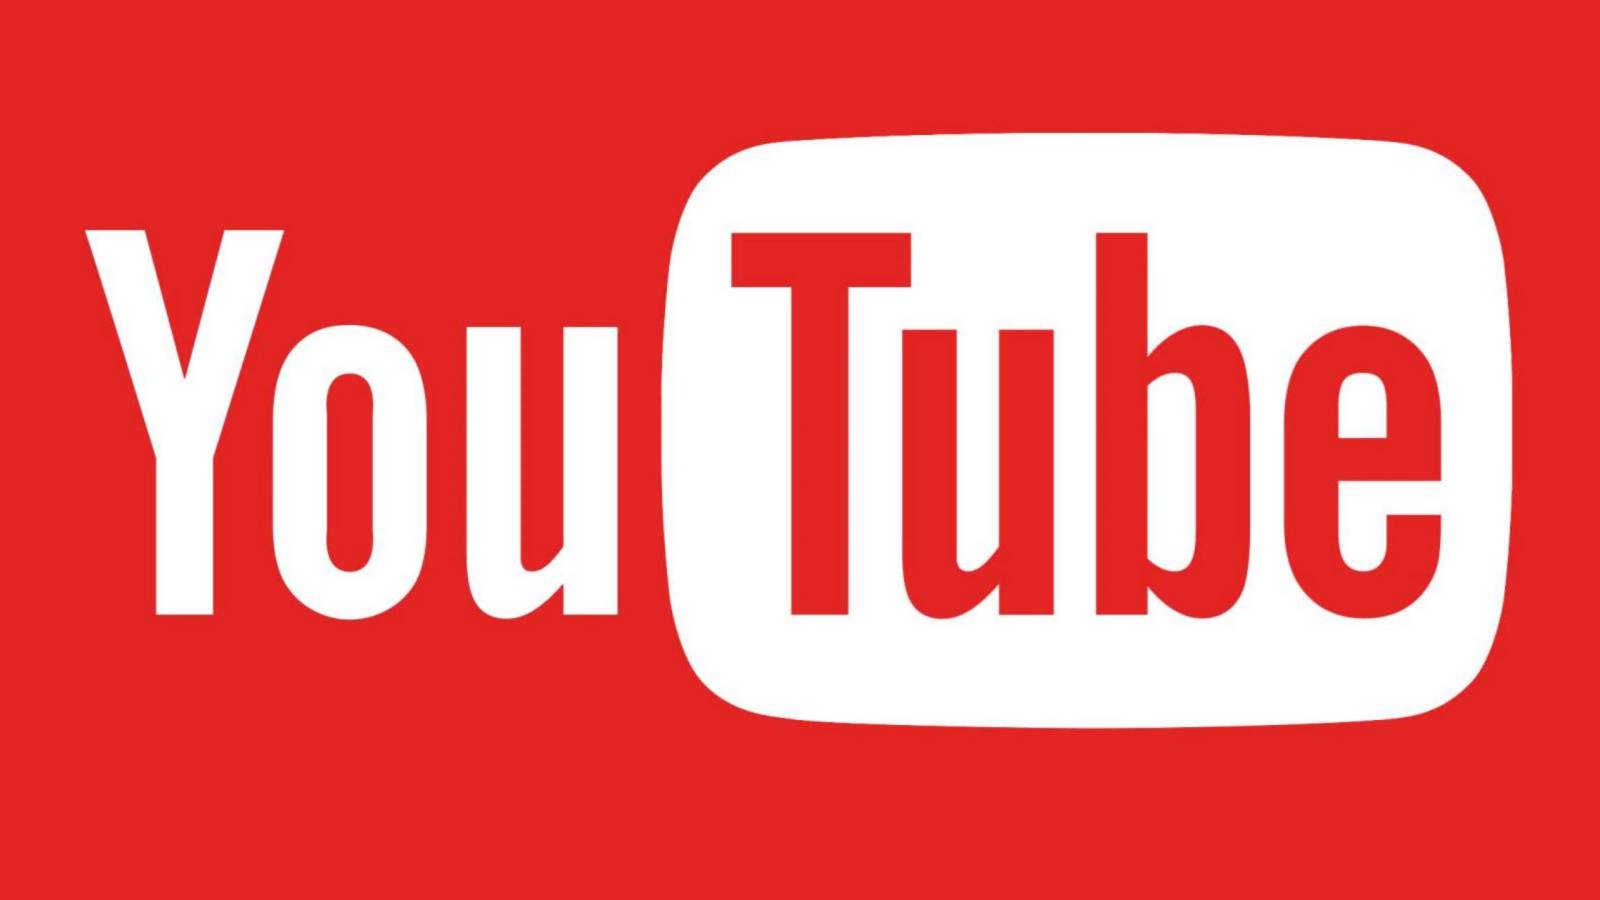 YouTube Actualizarea Noua, ce Schimbari Aduce Acum in Telefoane